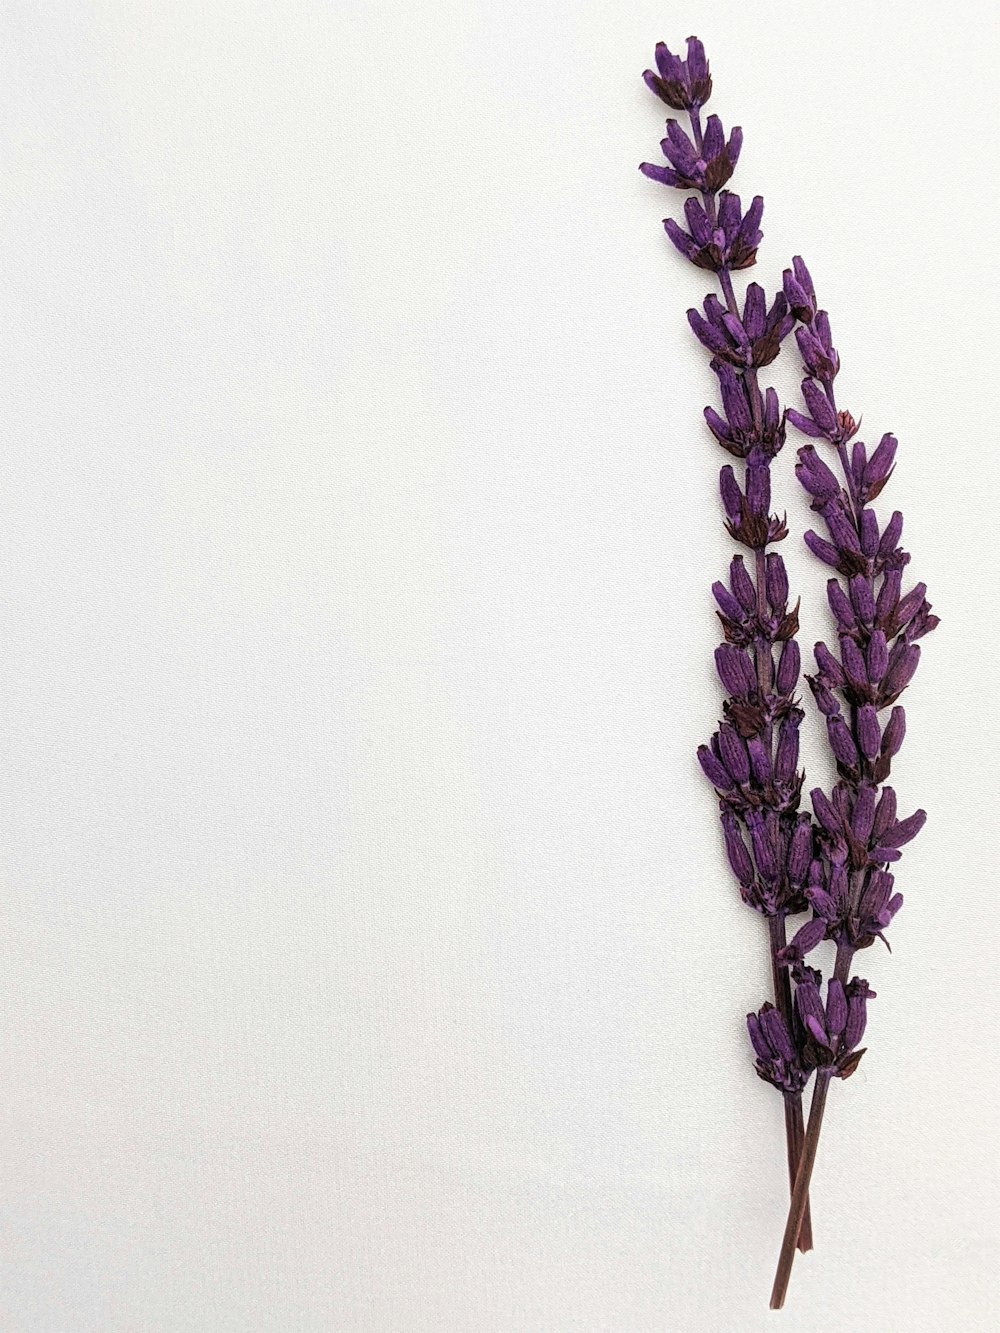 27+ Lavender Pictures | Download Free Images on Unsplash